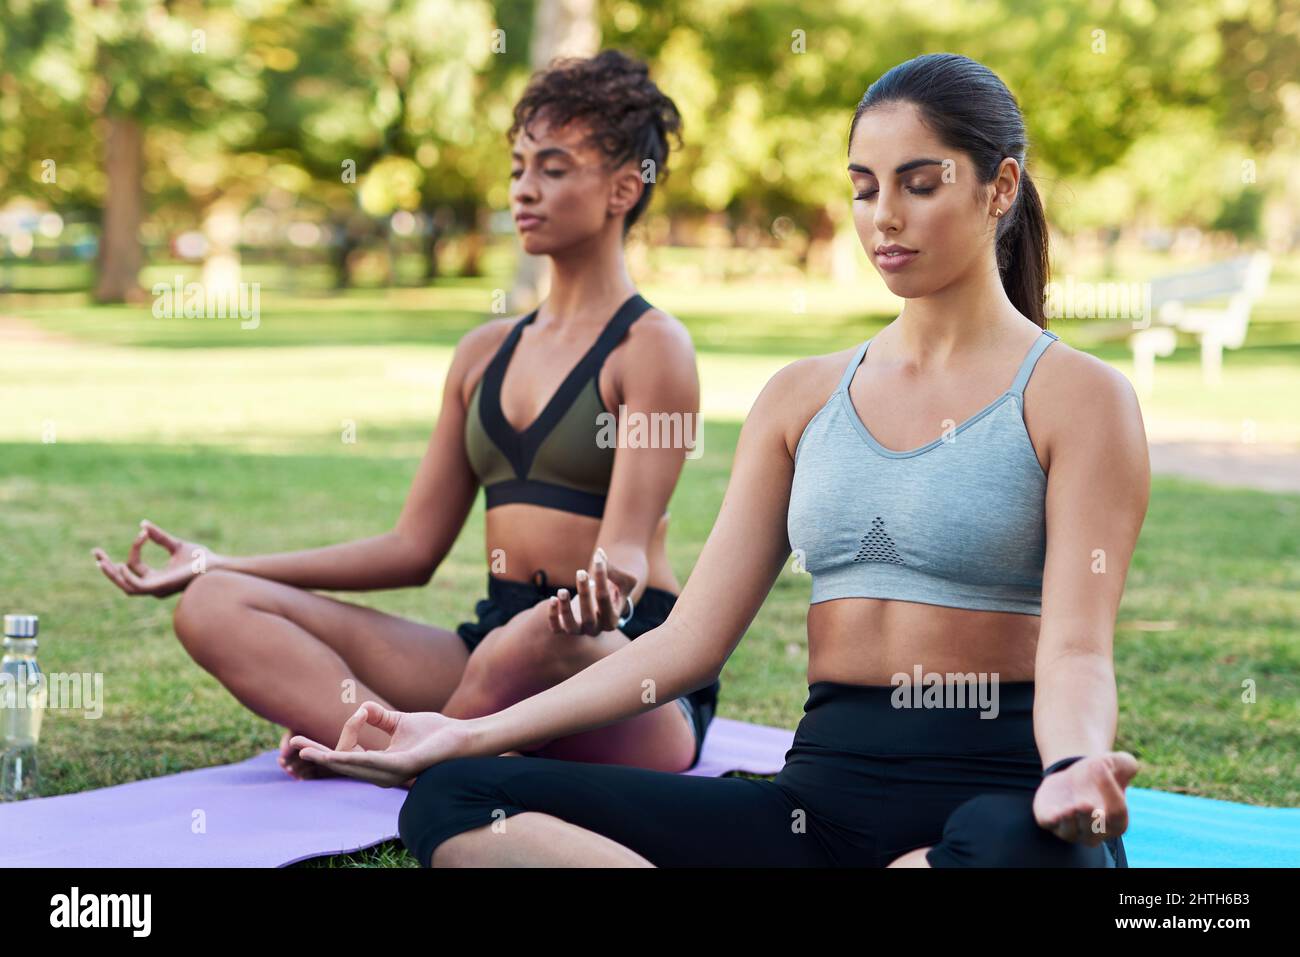 Se concentrer sur la pleine conscience et le souffle. Plan court de deux jeunes femmes attrayantes assises les unes à côté des autres et méditant dans le parc. Banque D'Images